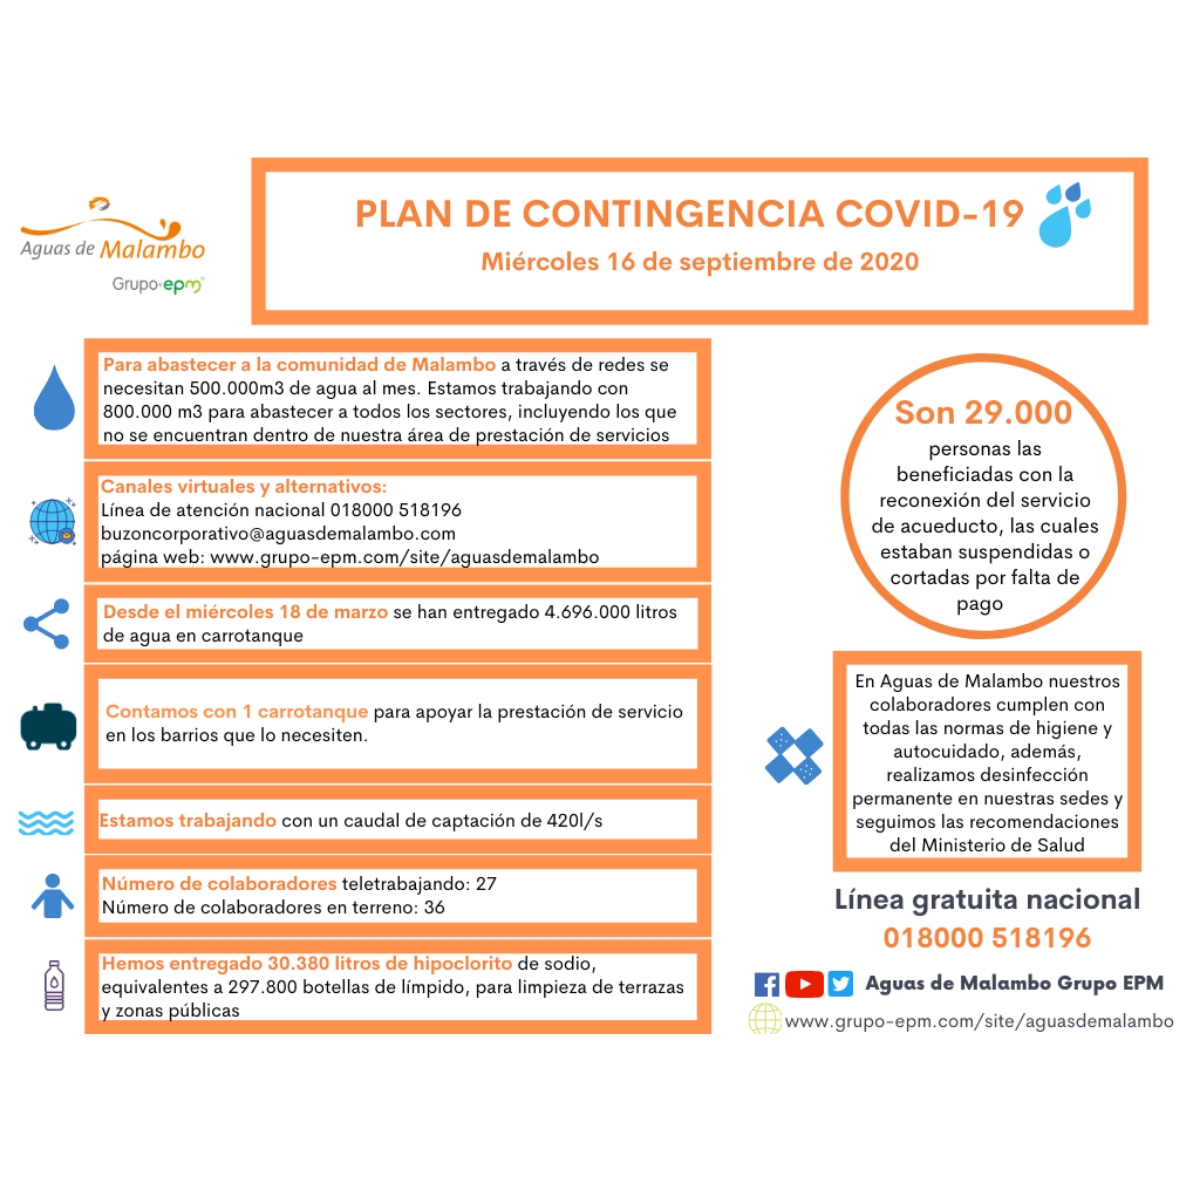 Seguimiento acciones plan de contingencia COVID-19: estas son las acciones ejecutadas por Aguas de Malambo para contribuir a controlar la expansión del Coronavirus